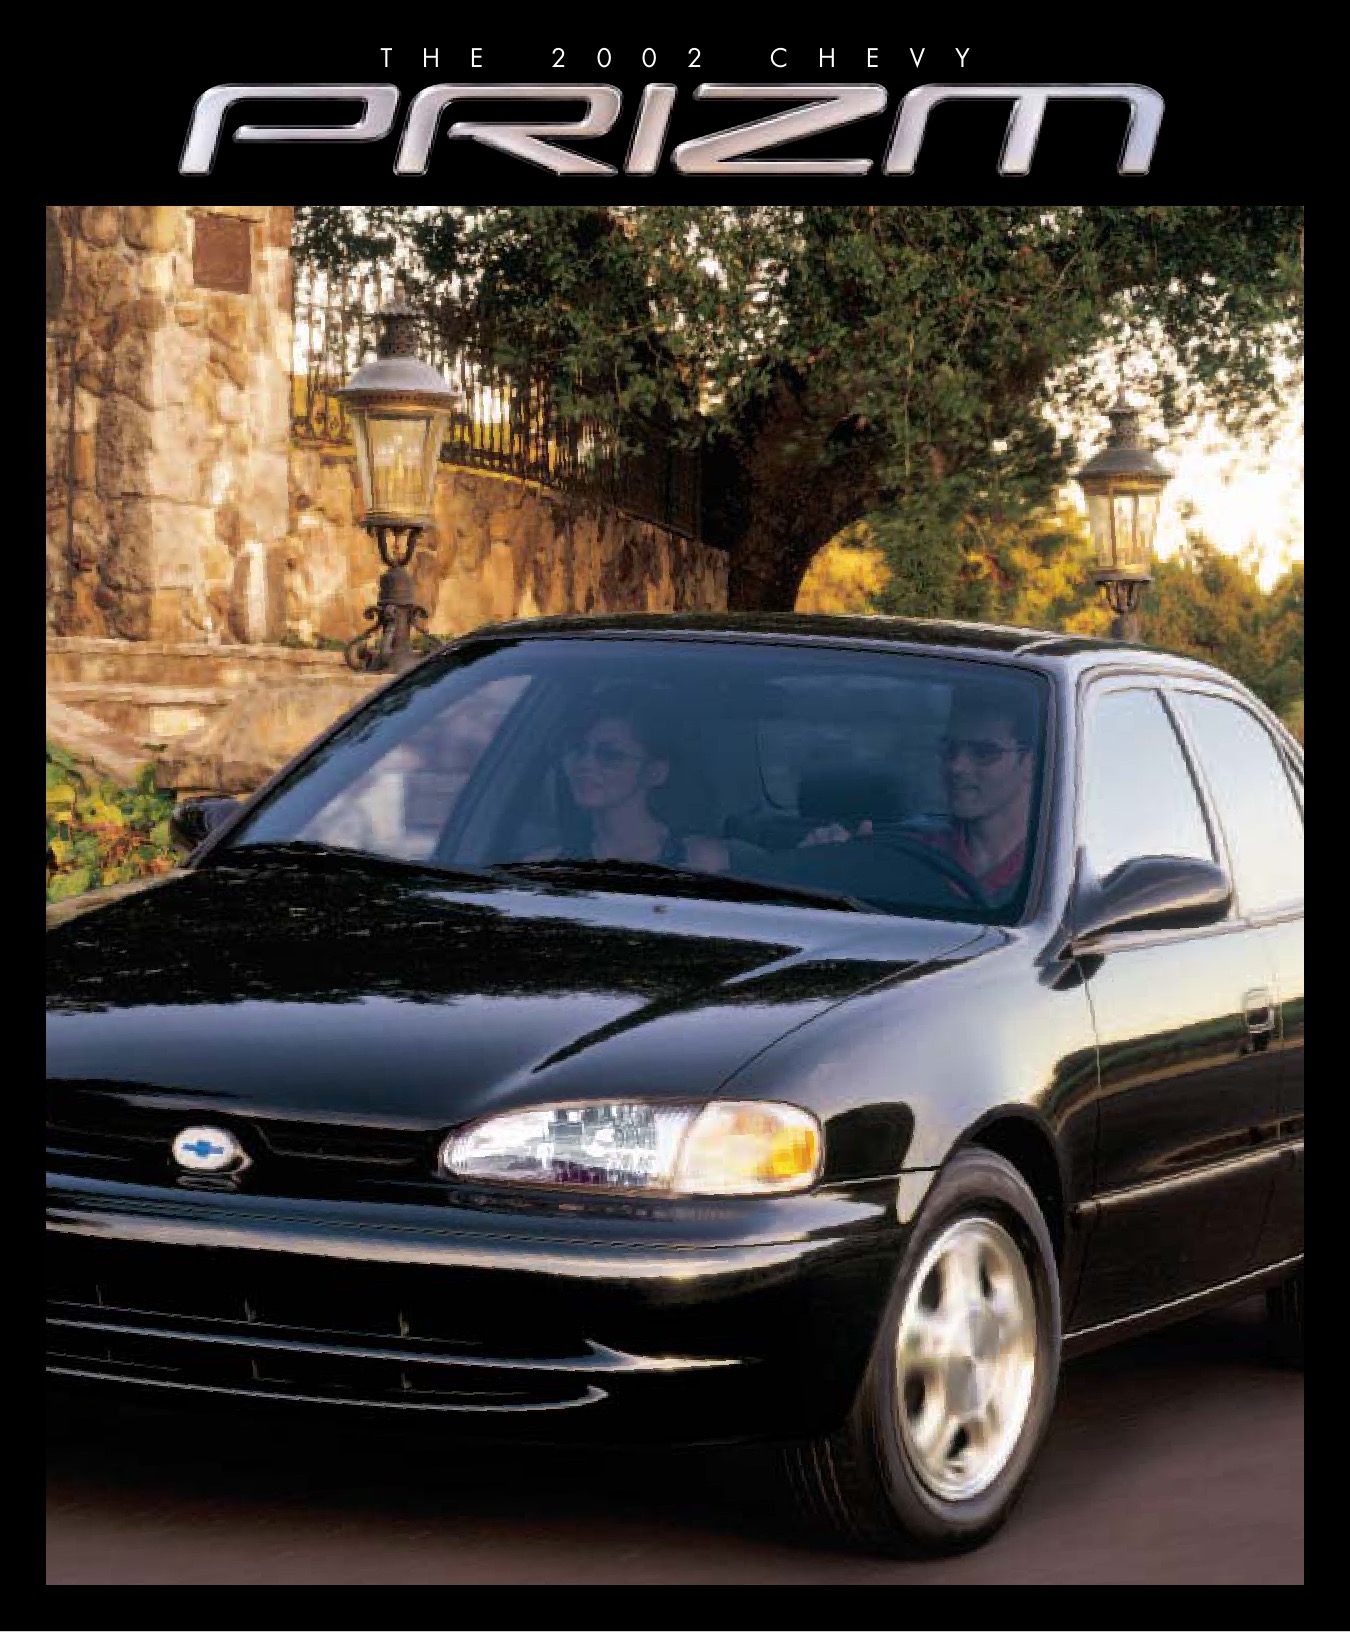 2000 Chevrolet Prizm Brochure